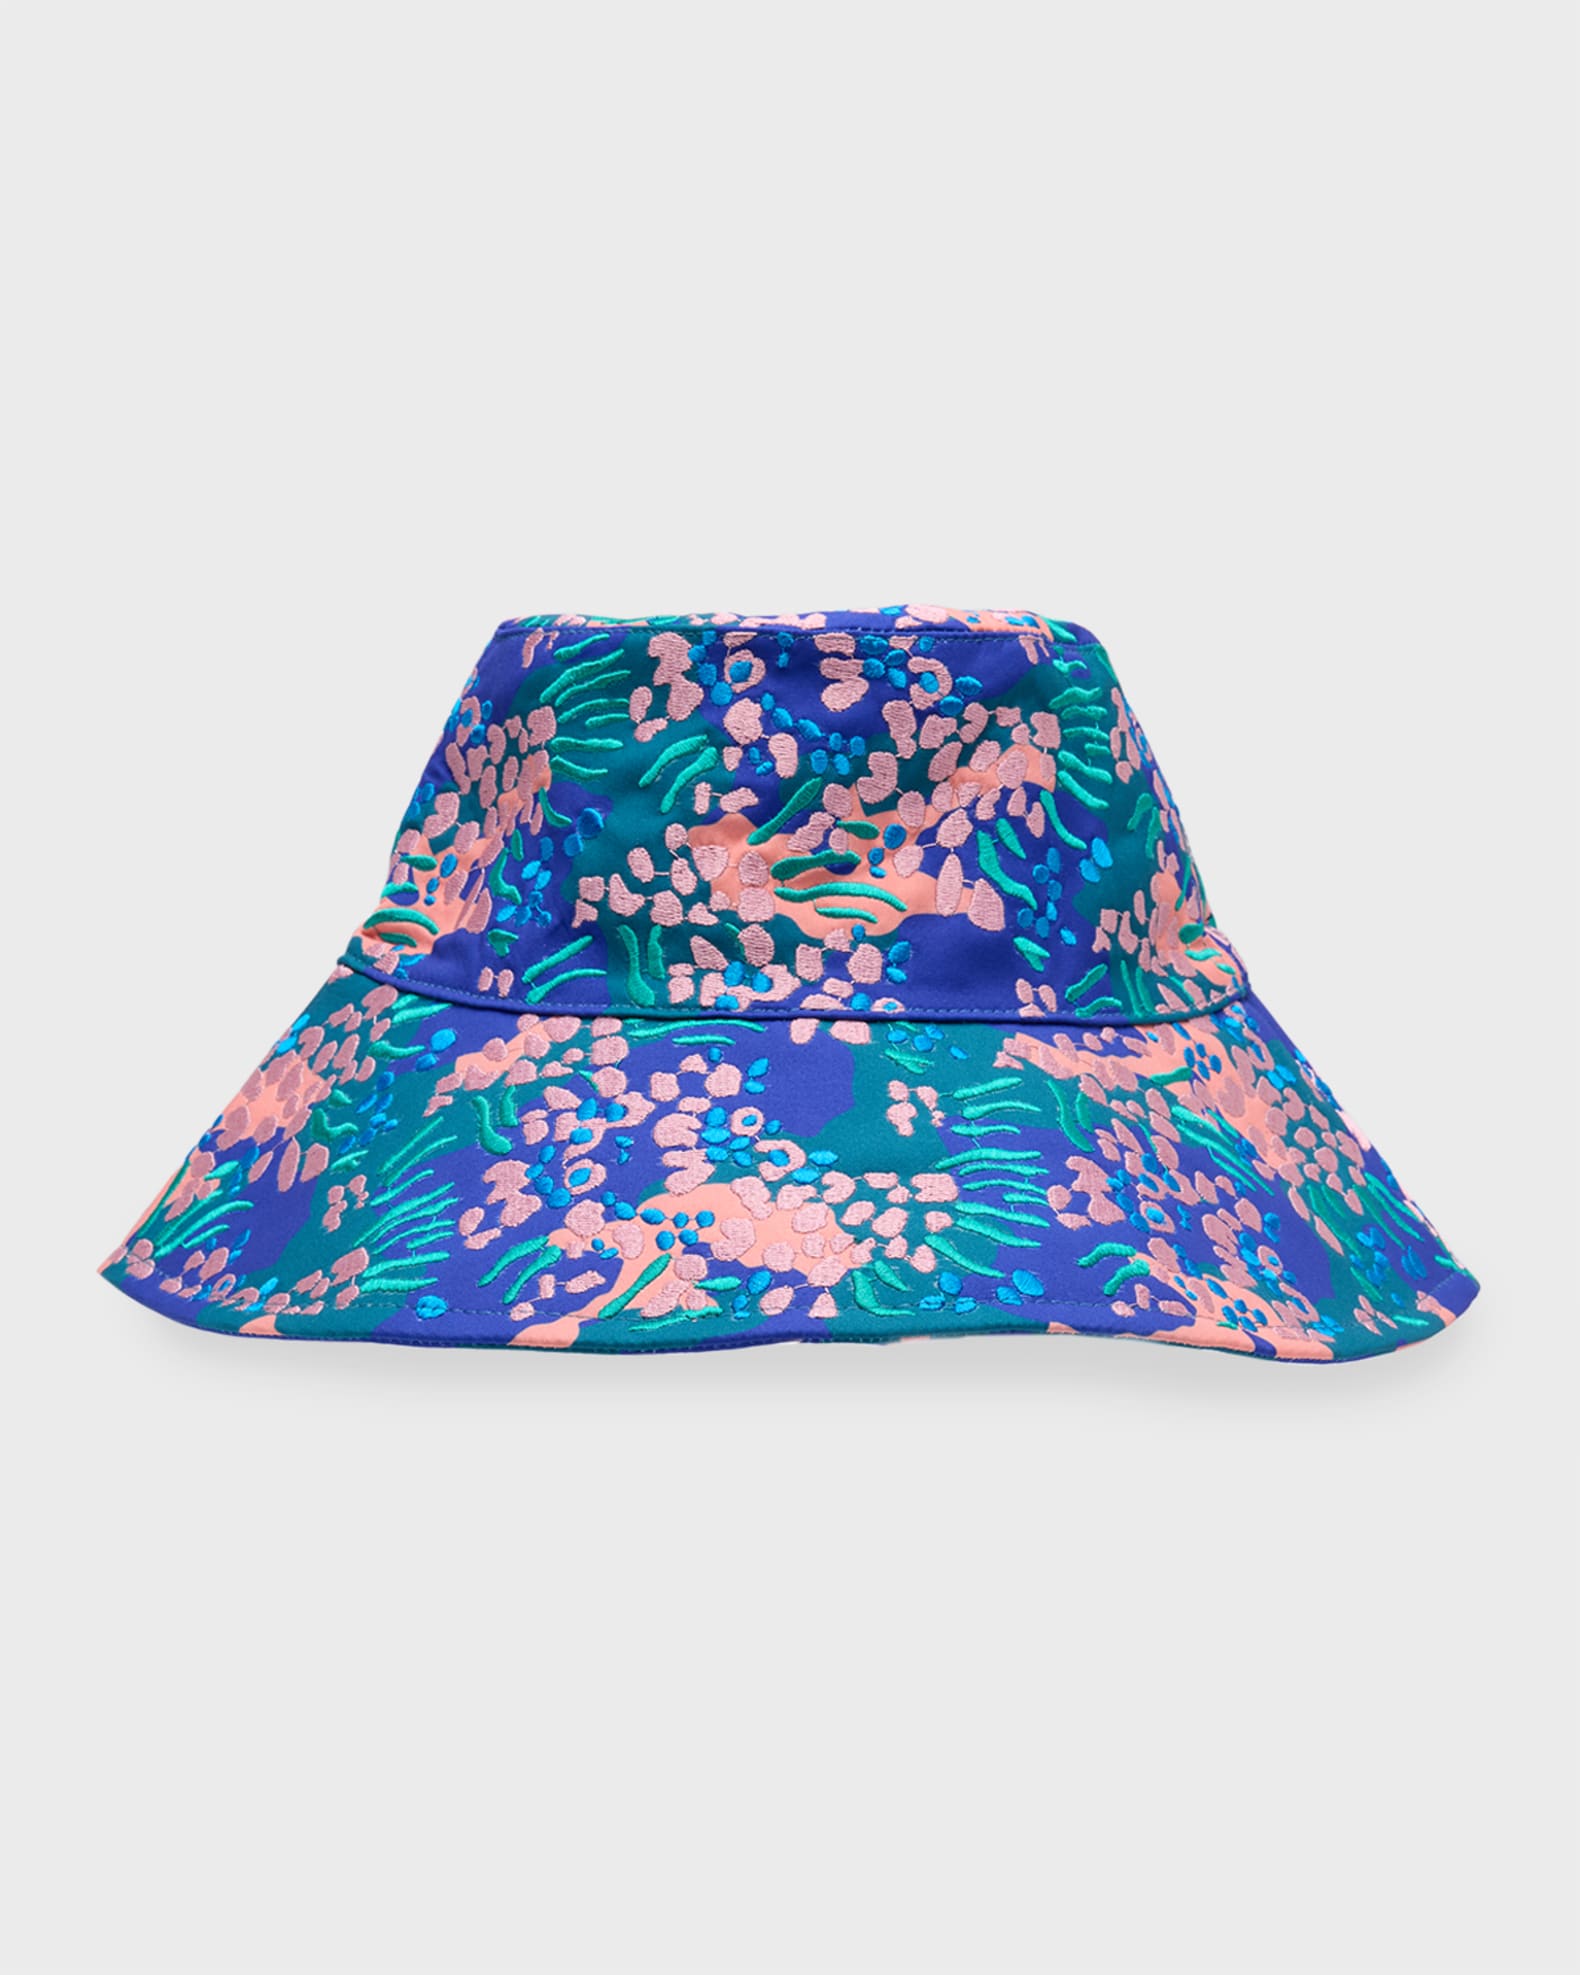 Lele Sadoughi Embroidered Bucket Hat | Neiman Marcus